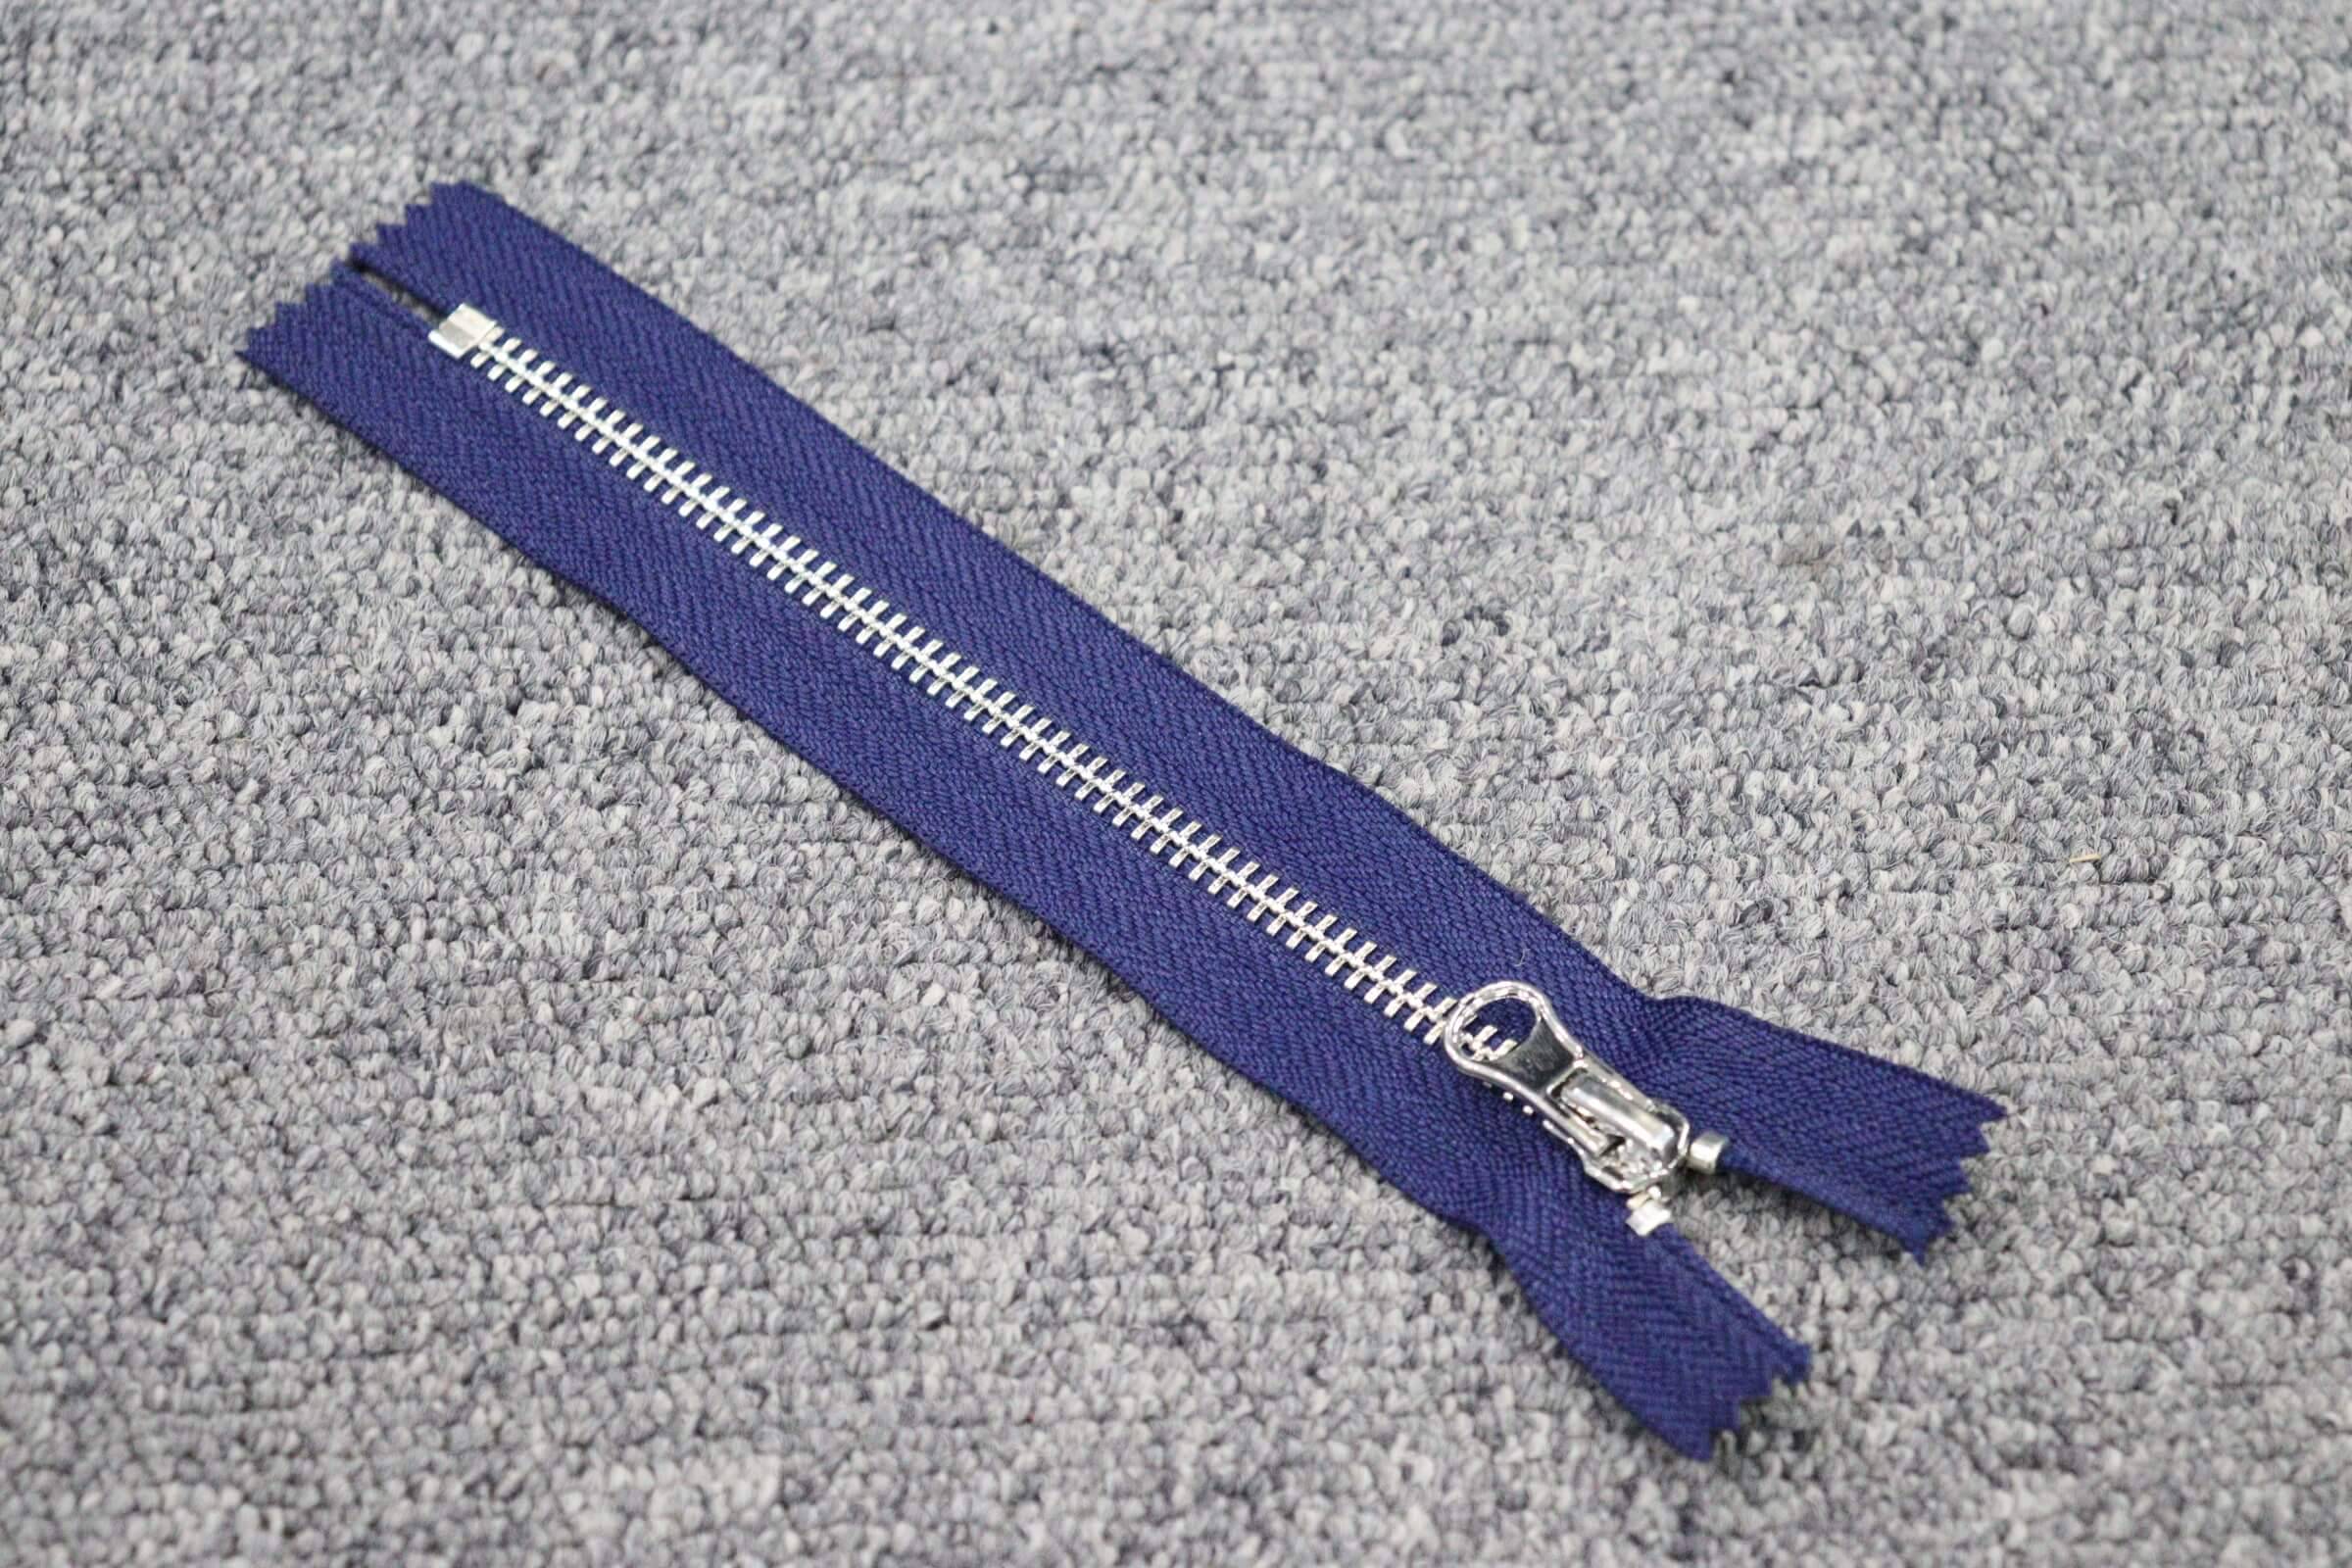 Fire-proof Zipper